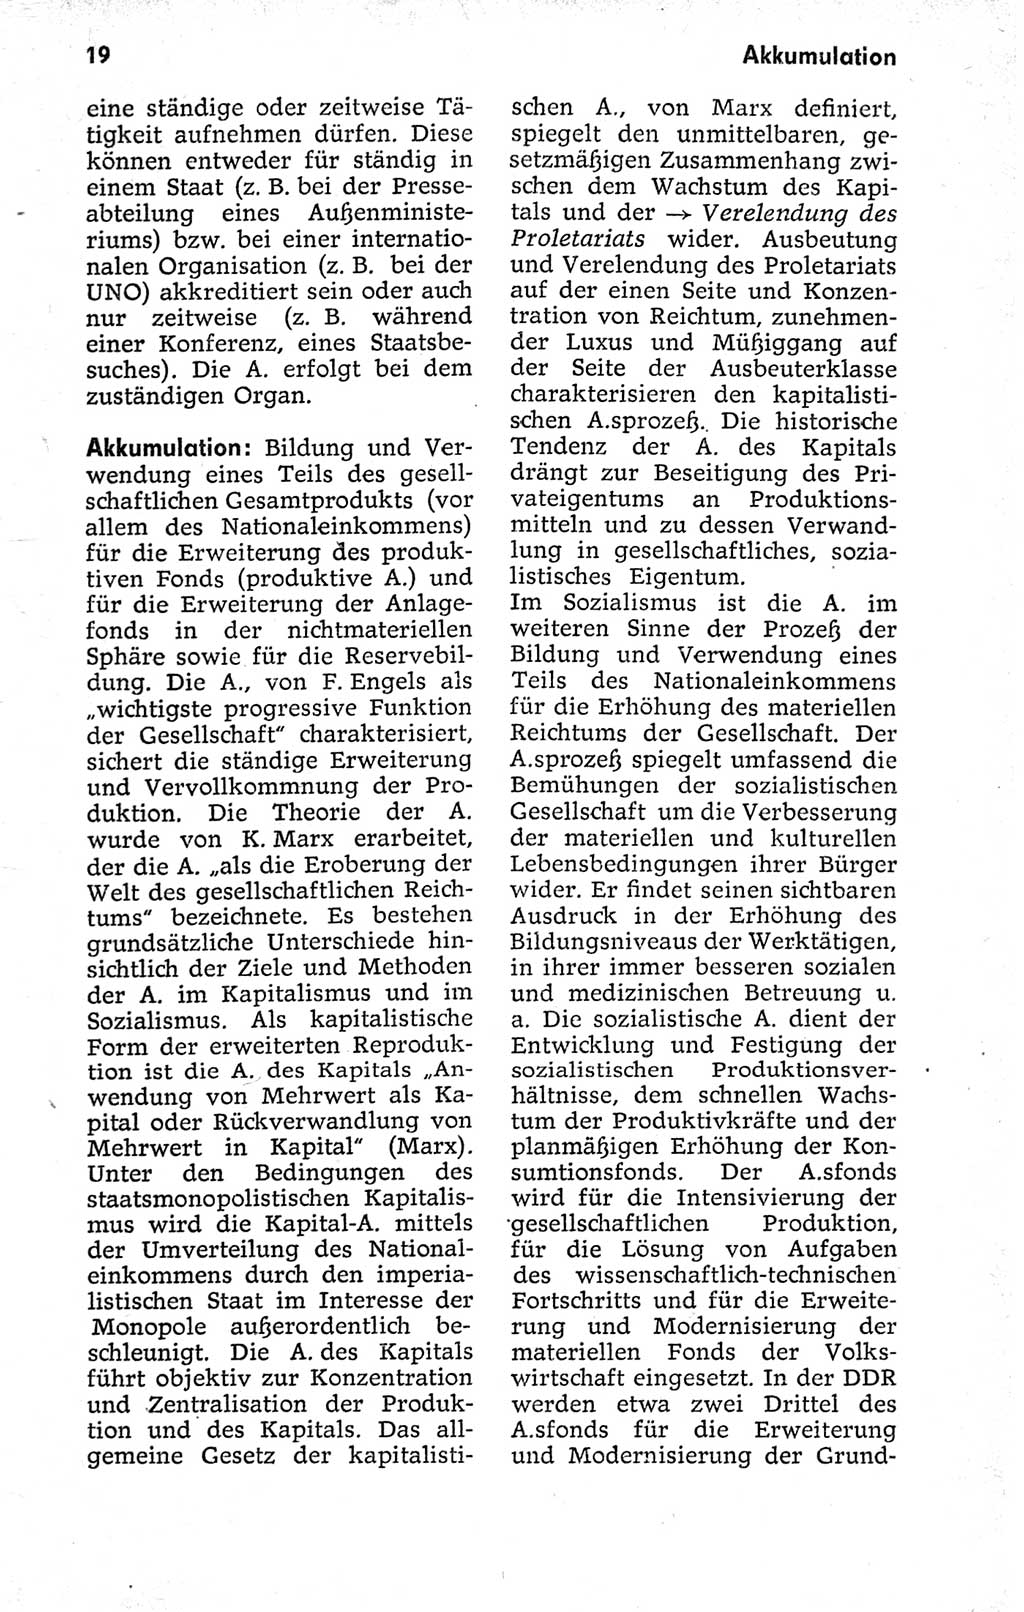 Kleines politisches Wörterbuch [Deutsche Demokratische Republik (DDR)] 1973, Seite 19 (Kl. pol. Wb. DDR 1973, S. 19)